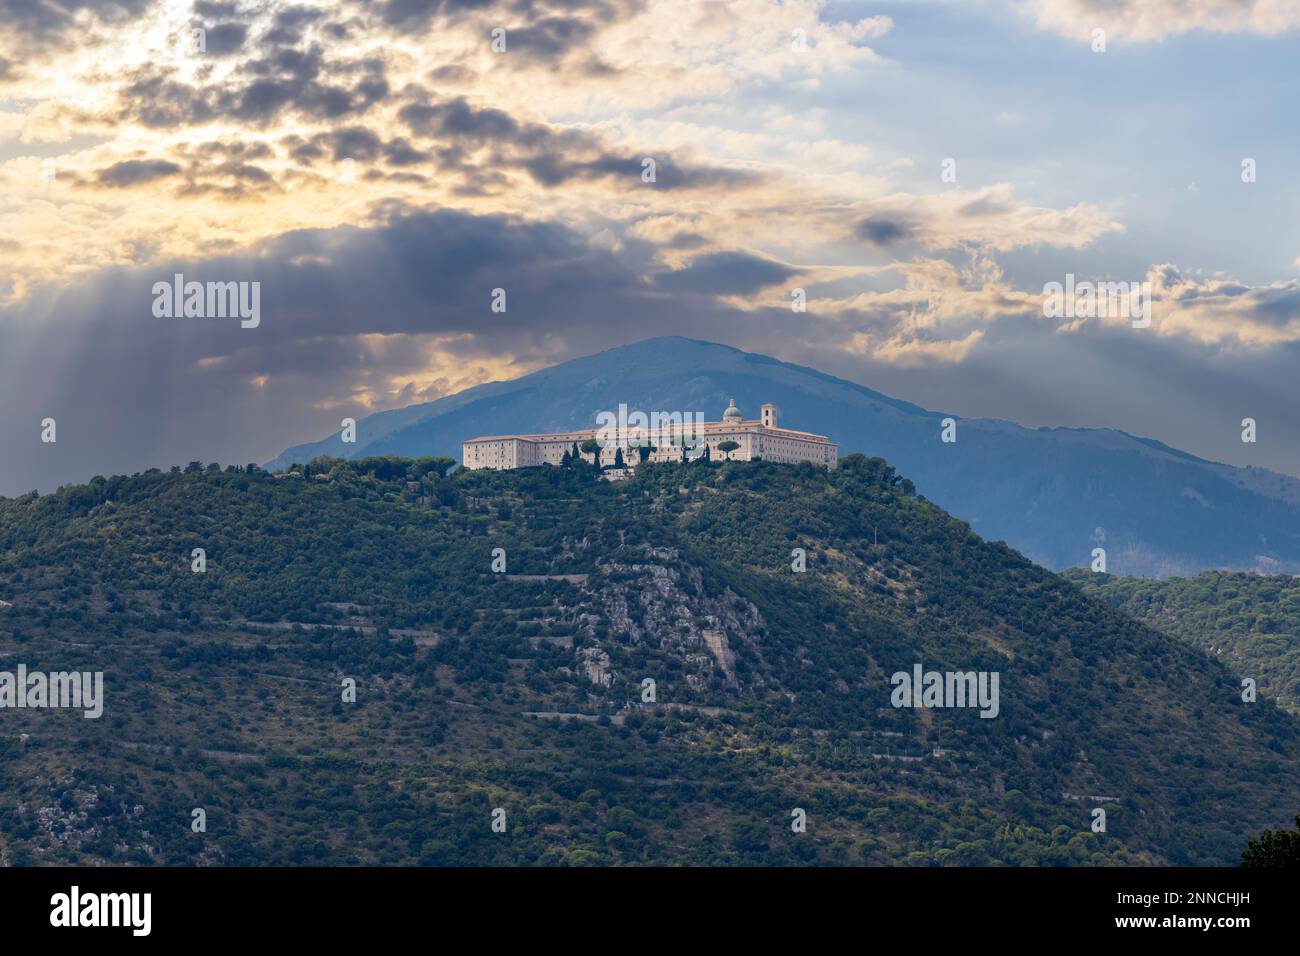 Abbey of Monte Cassino in Lazio Region, Italy Stock Photo